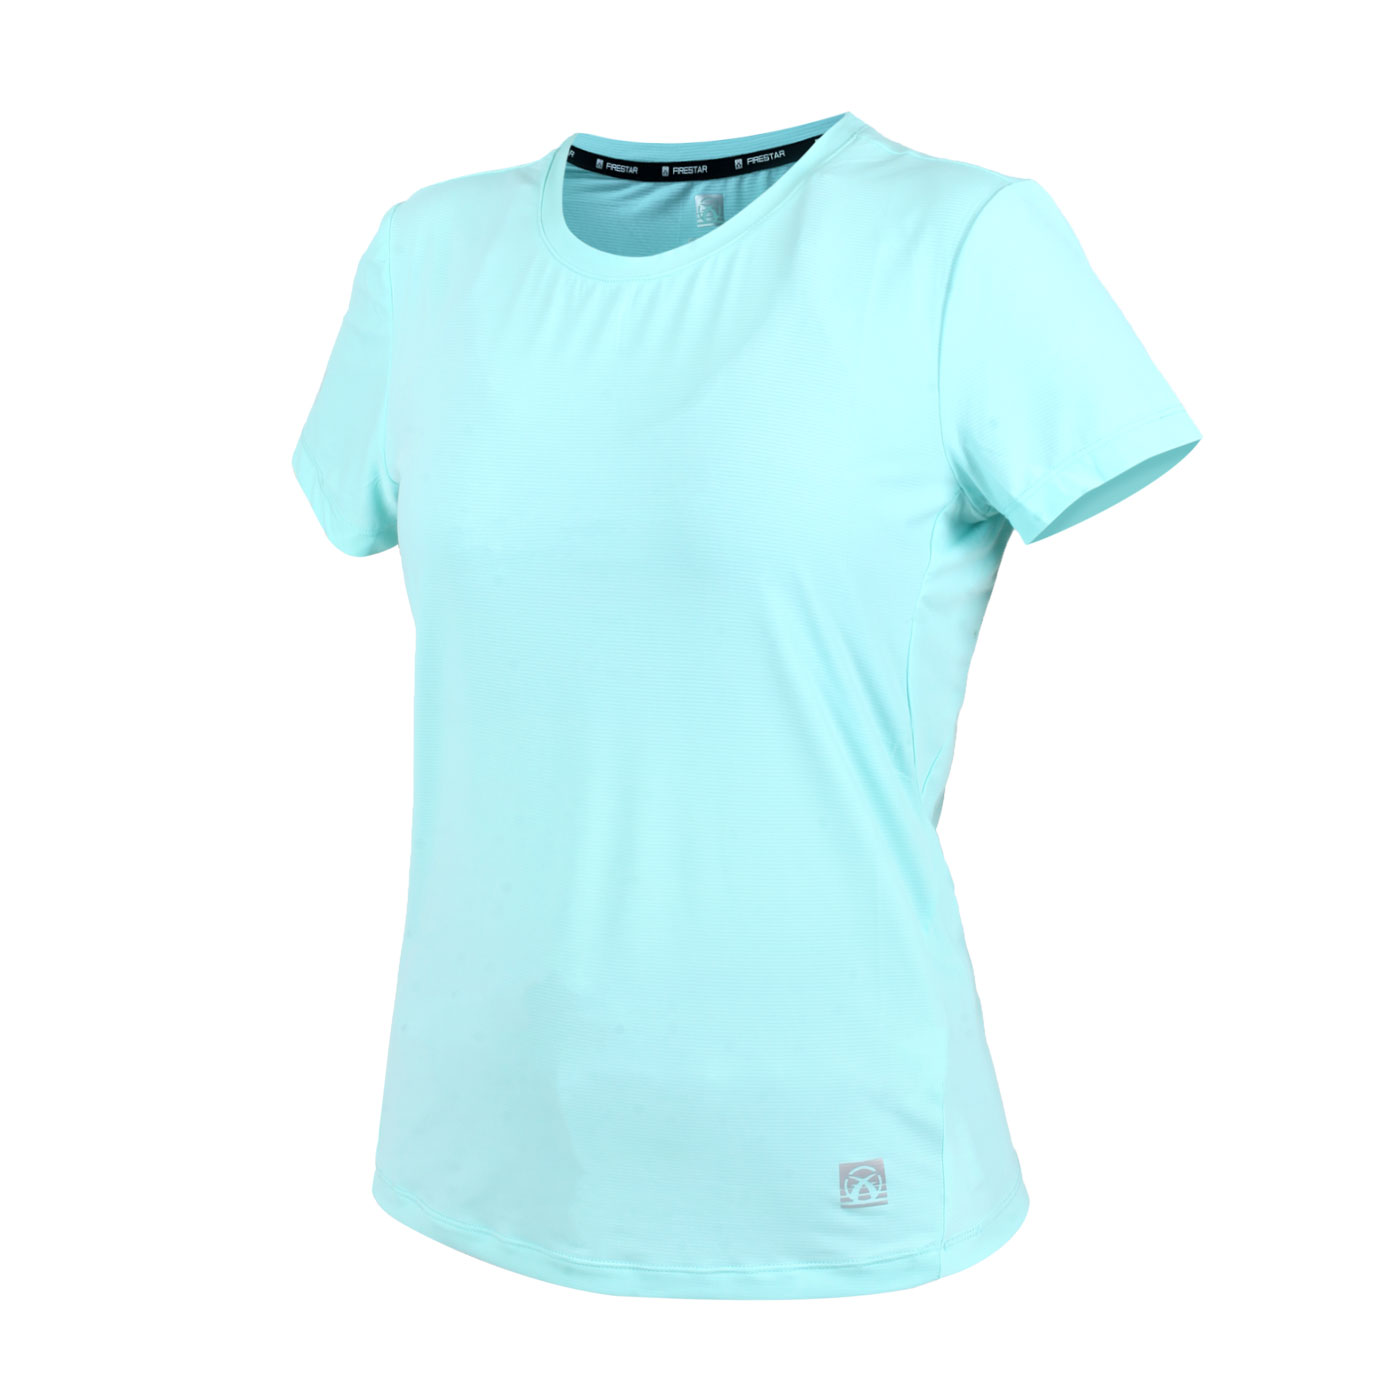 FIRESTAR 女款彈性圓領短袖T恤 DL261-66 - 蒂芬妮綠